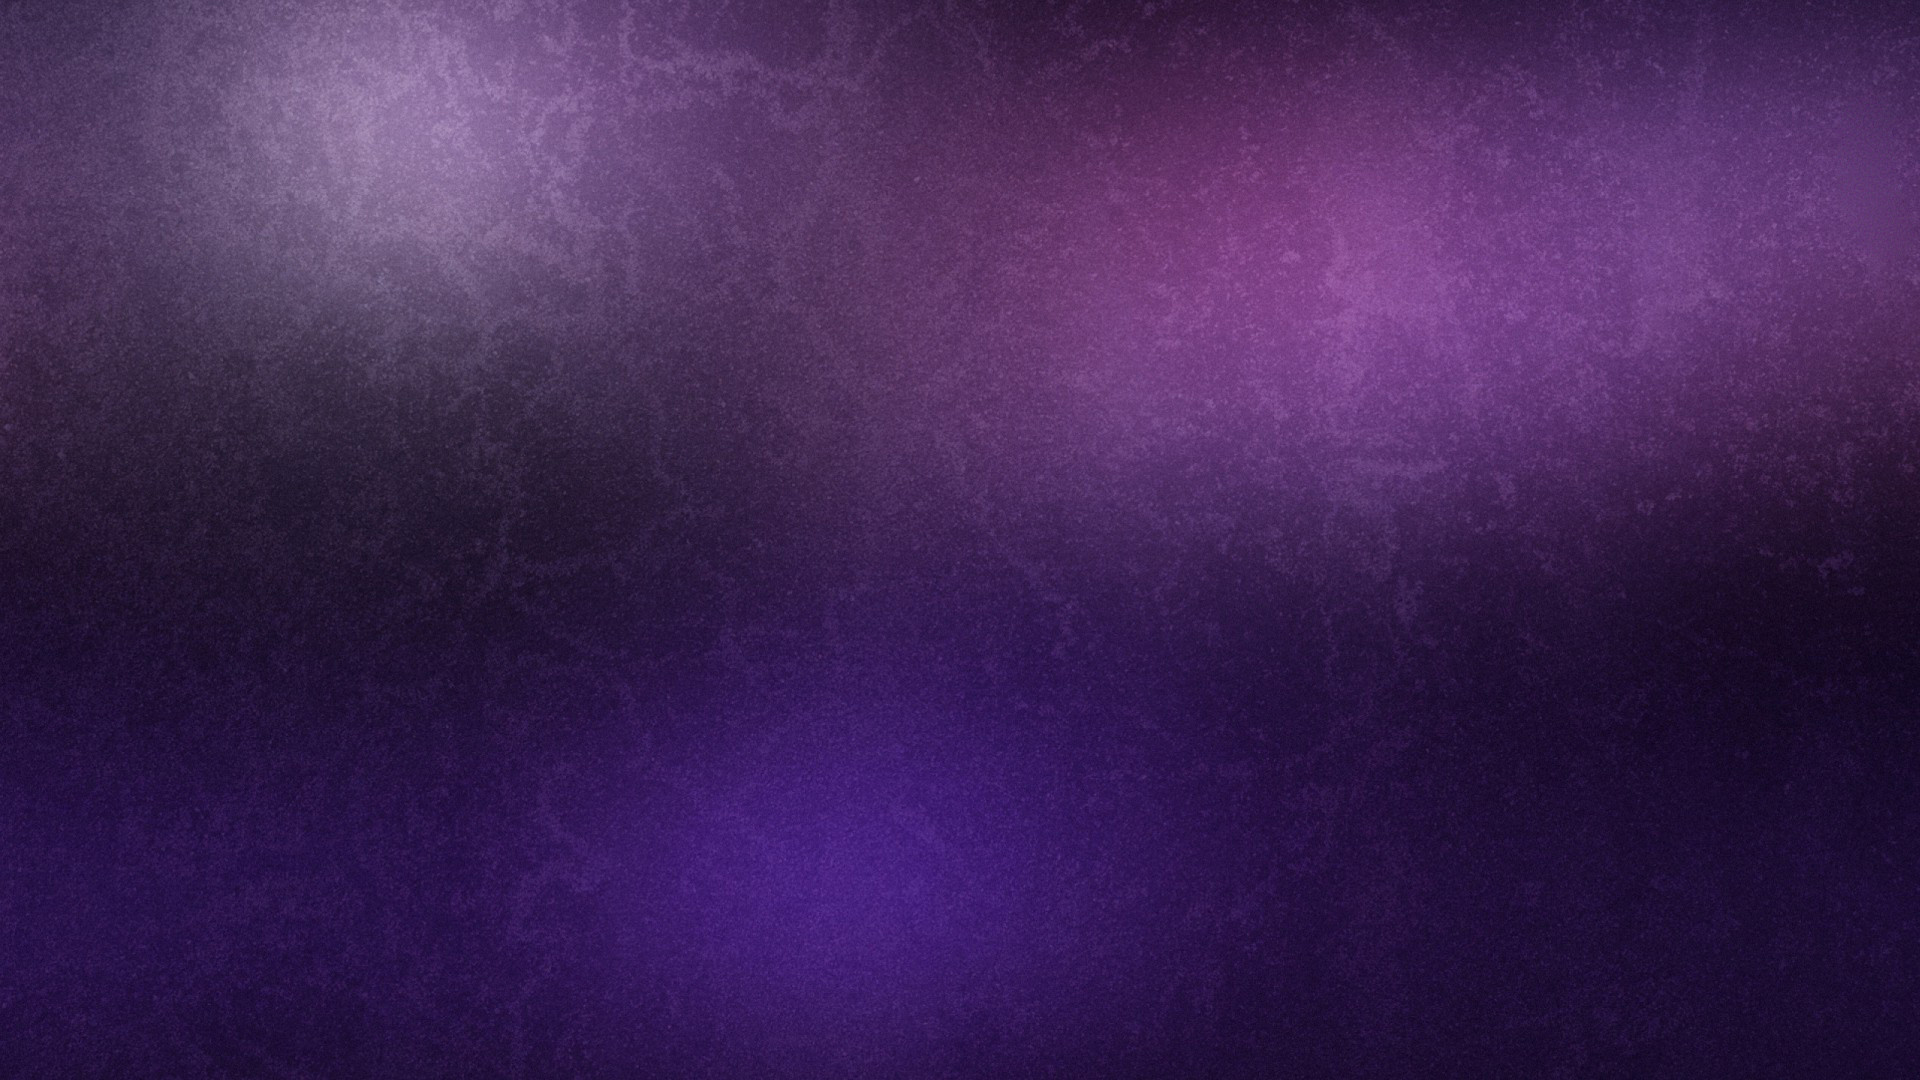 1920x1080 Purple color simple hd wallpaper for desktop backgrounds. Â«Â«